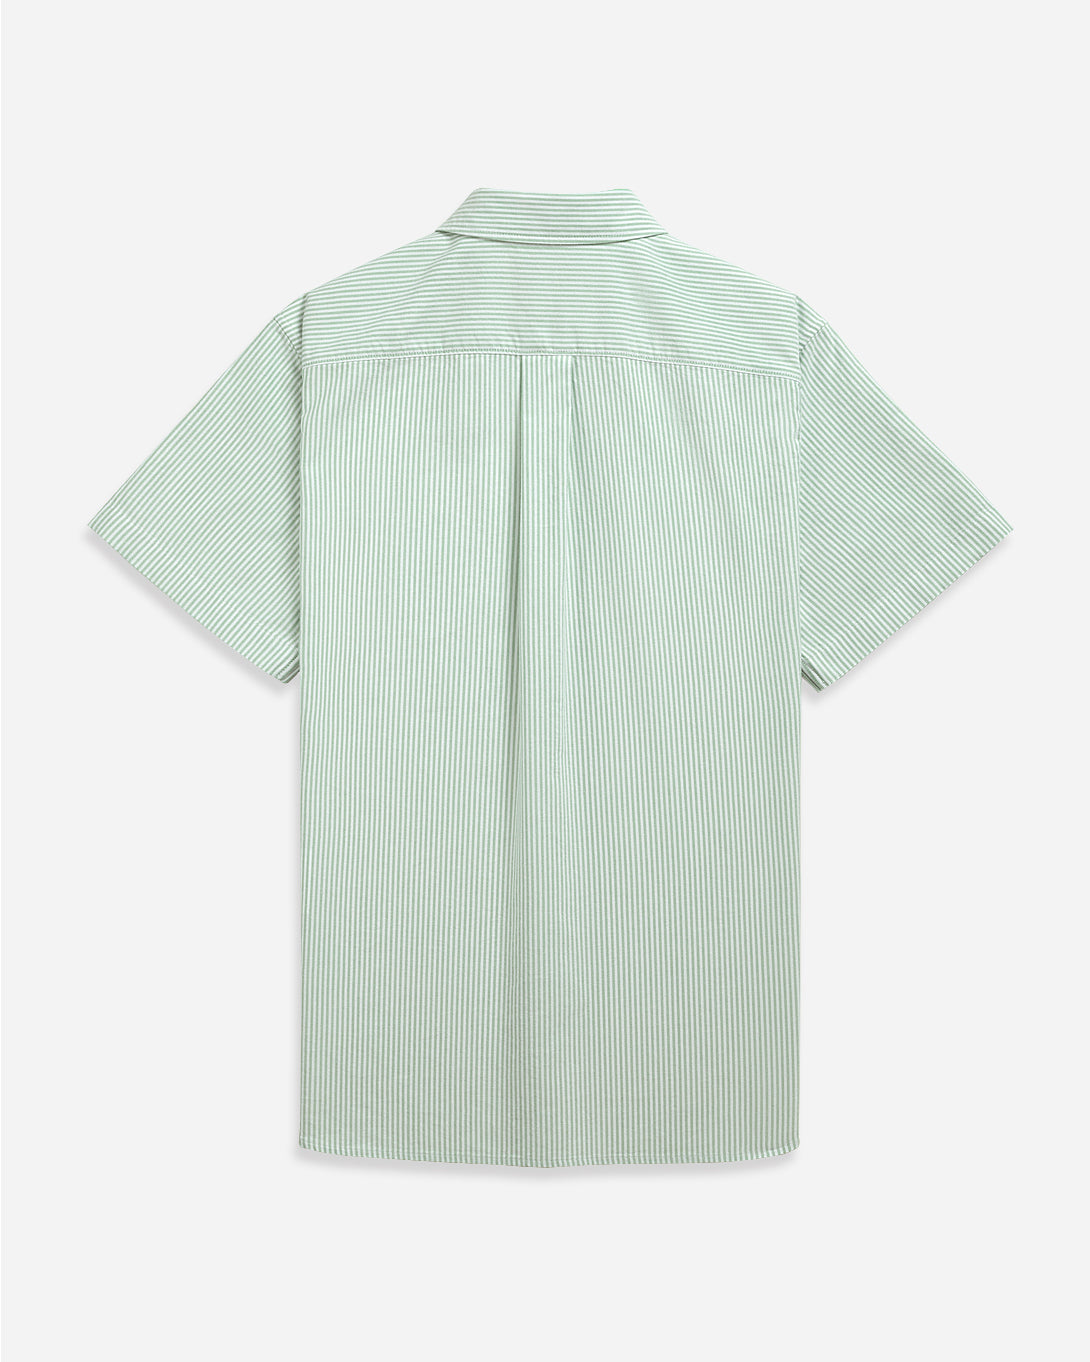 KASHMIR GREEN/WHITE STRIPE Fulton Stripe Oxford Shirt Mens Logo Short Sleeve Button Down